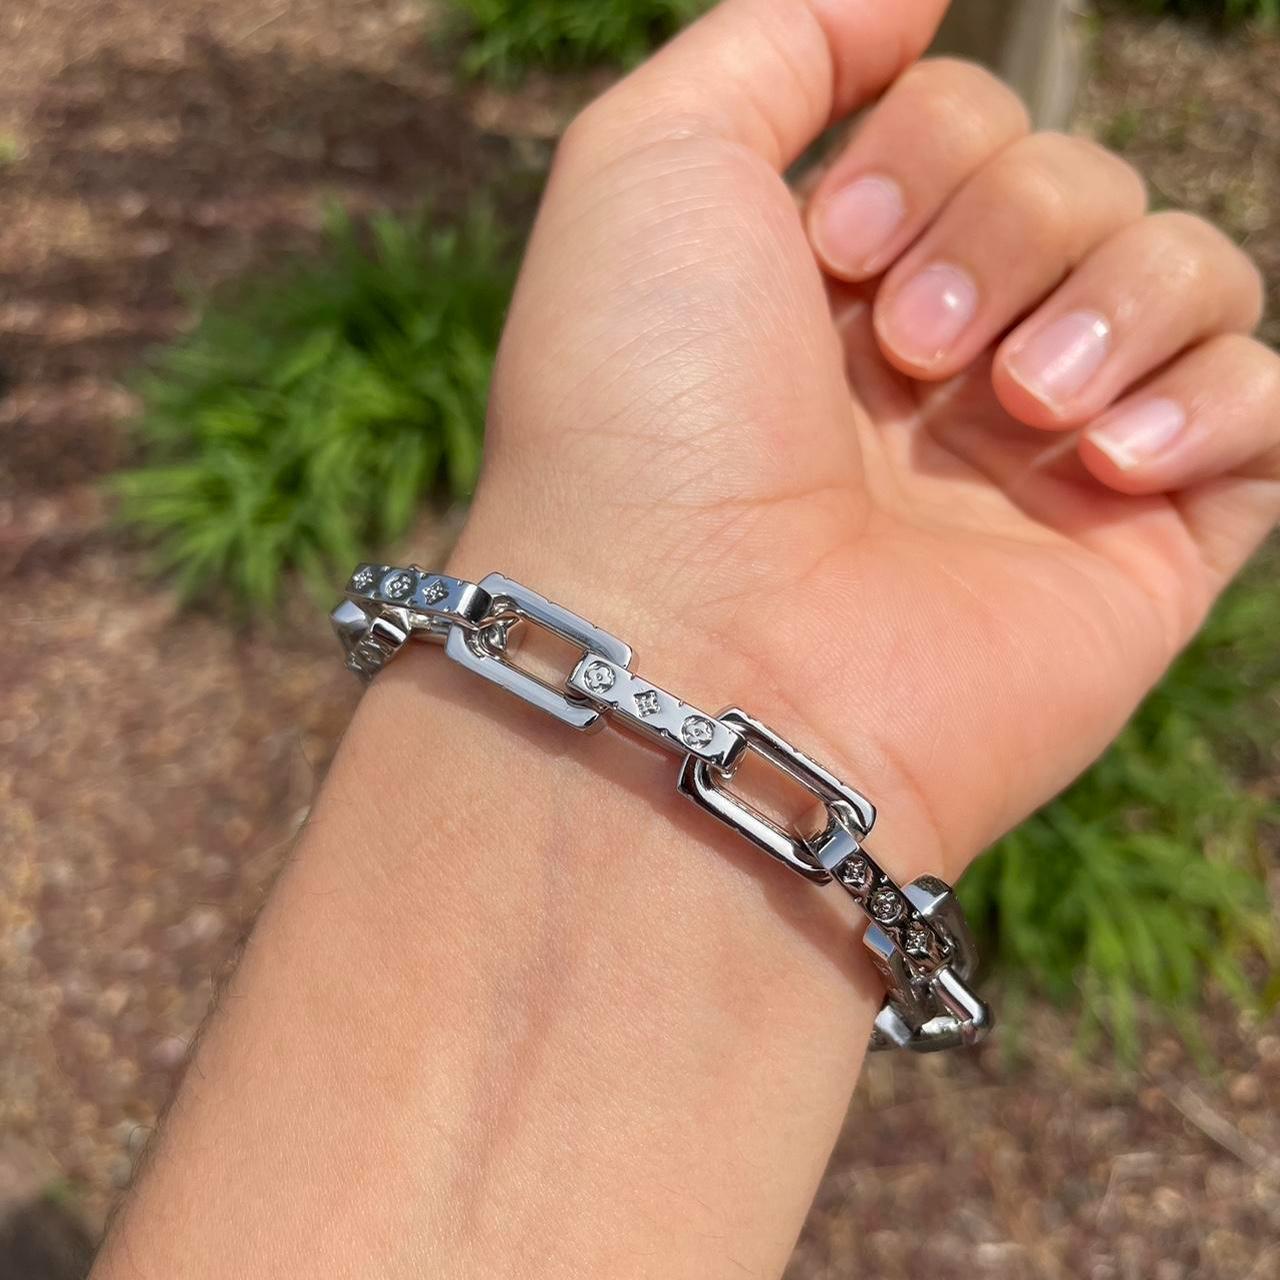 Silver Louis Vuitton Monogram Chain Link Bracelet